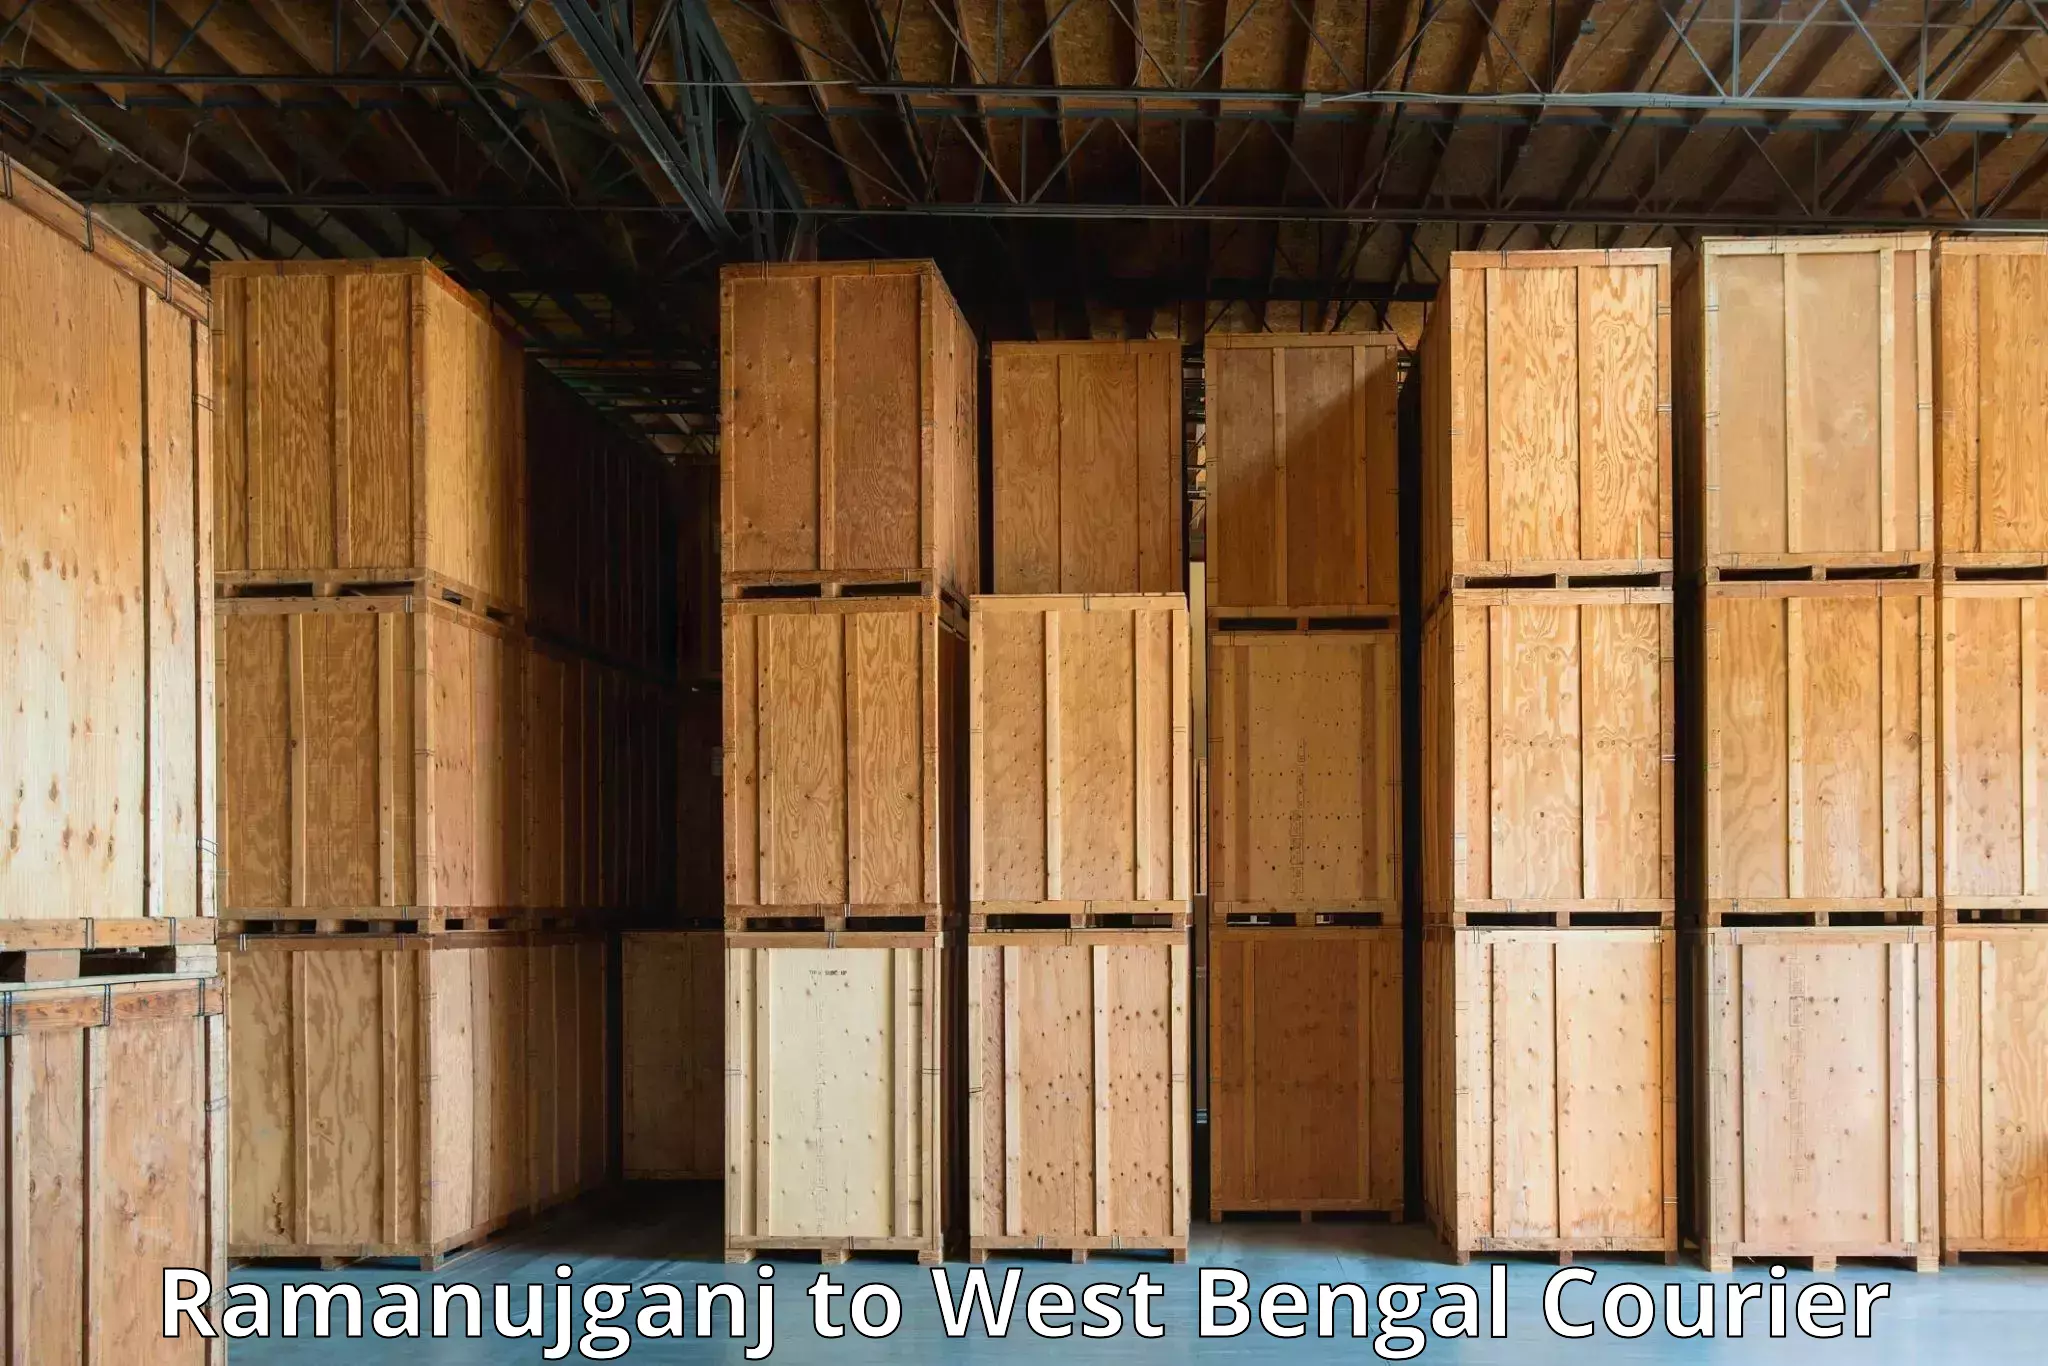 Efficient parcel service Ramanujganj to Tollygunge